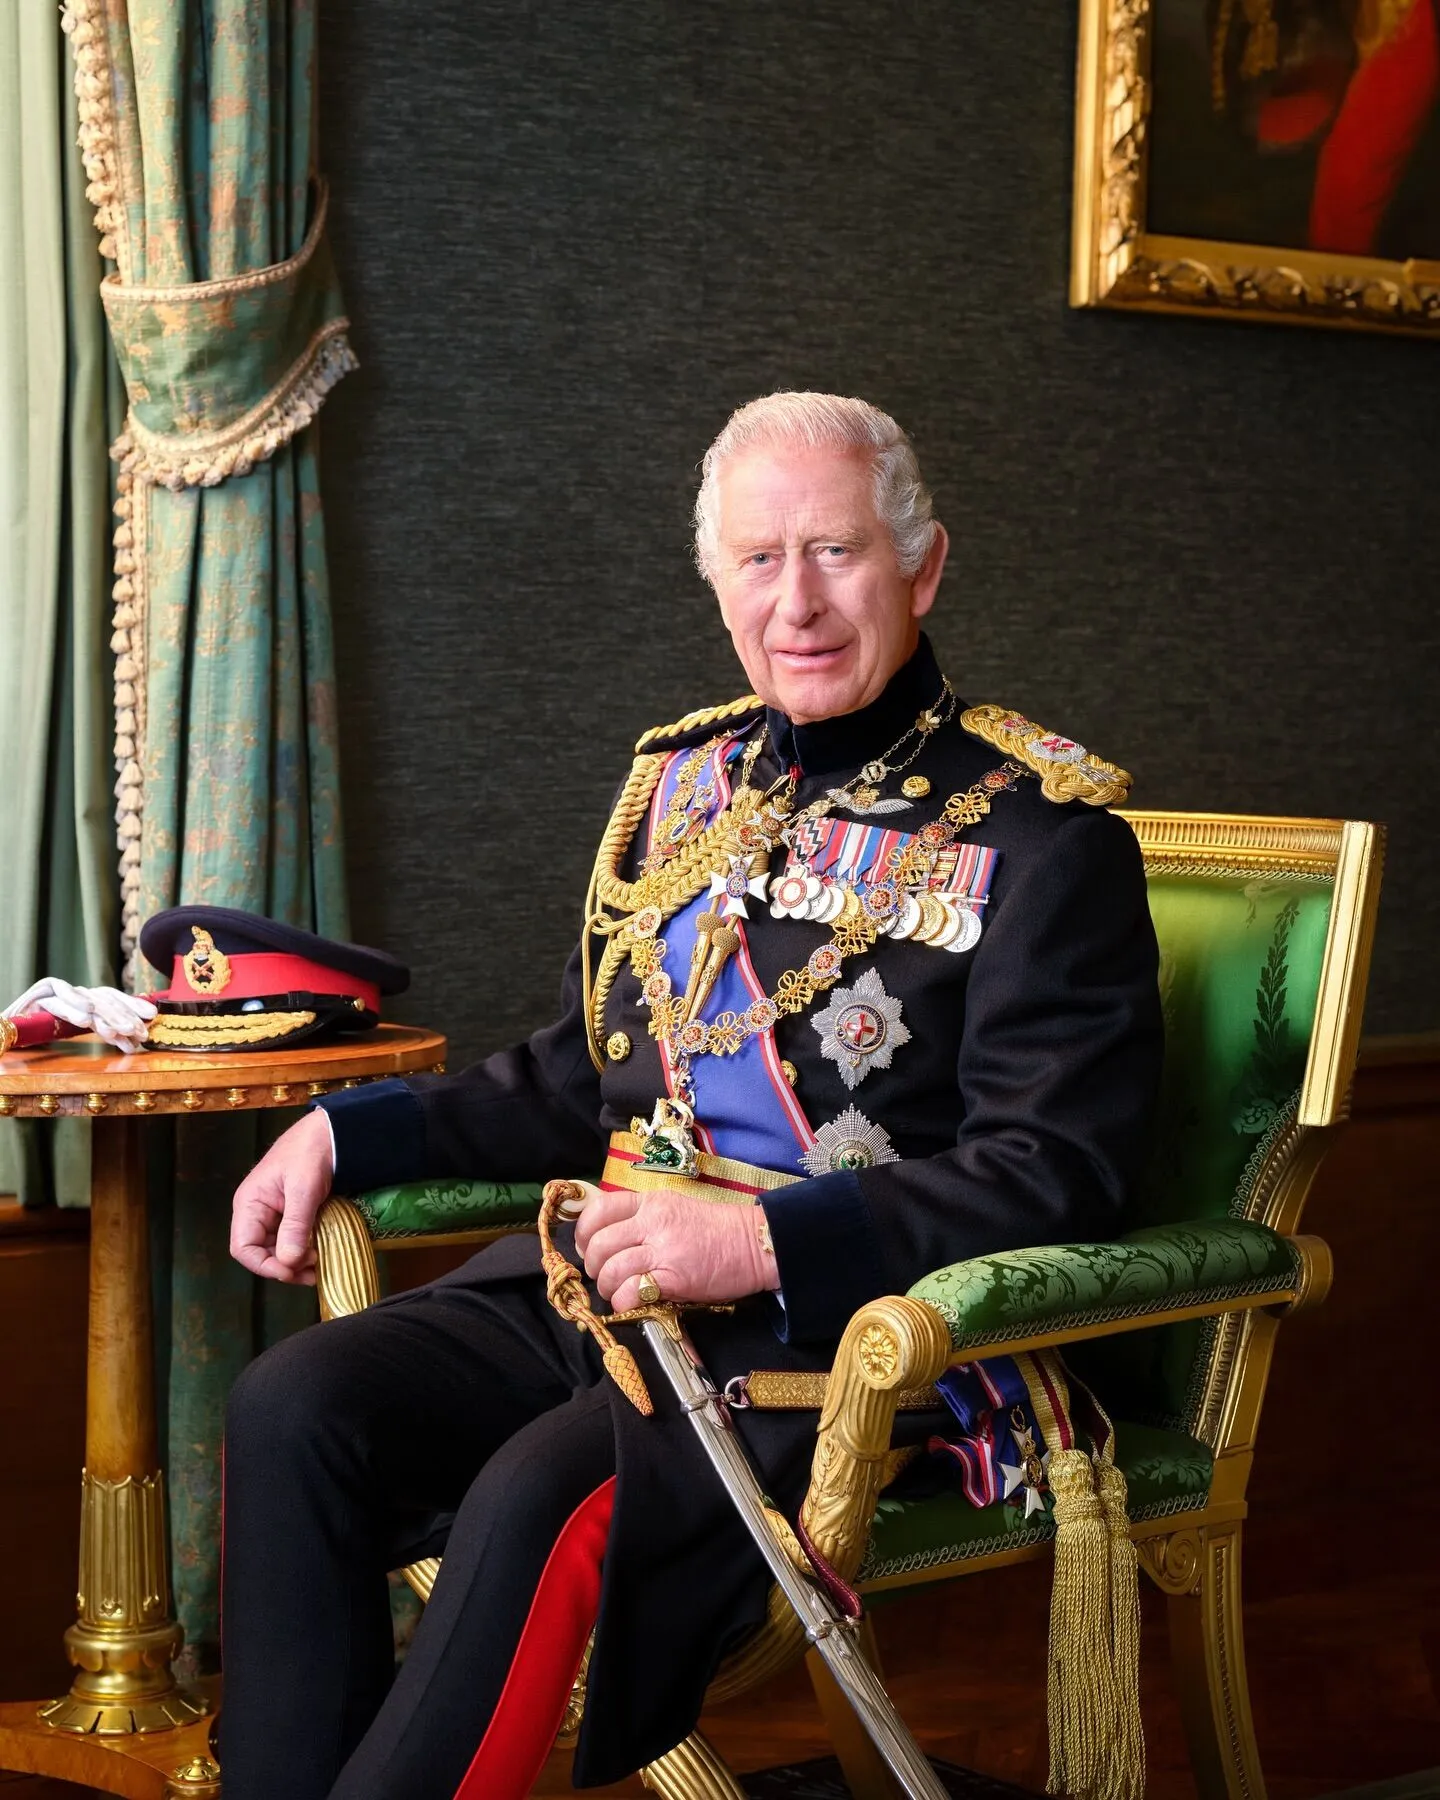 Opublikowano nowy oficjalny portret króla Wielkiej Brytanii Karola III. Zdjęcie